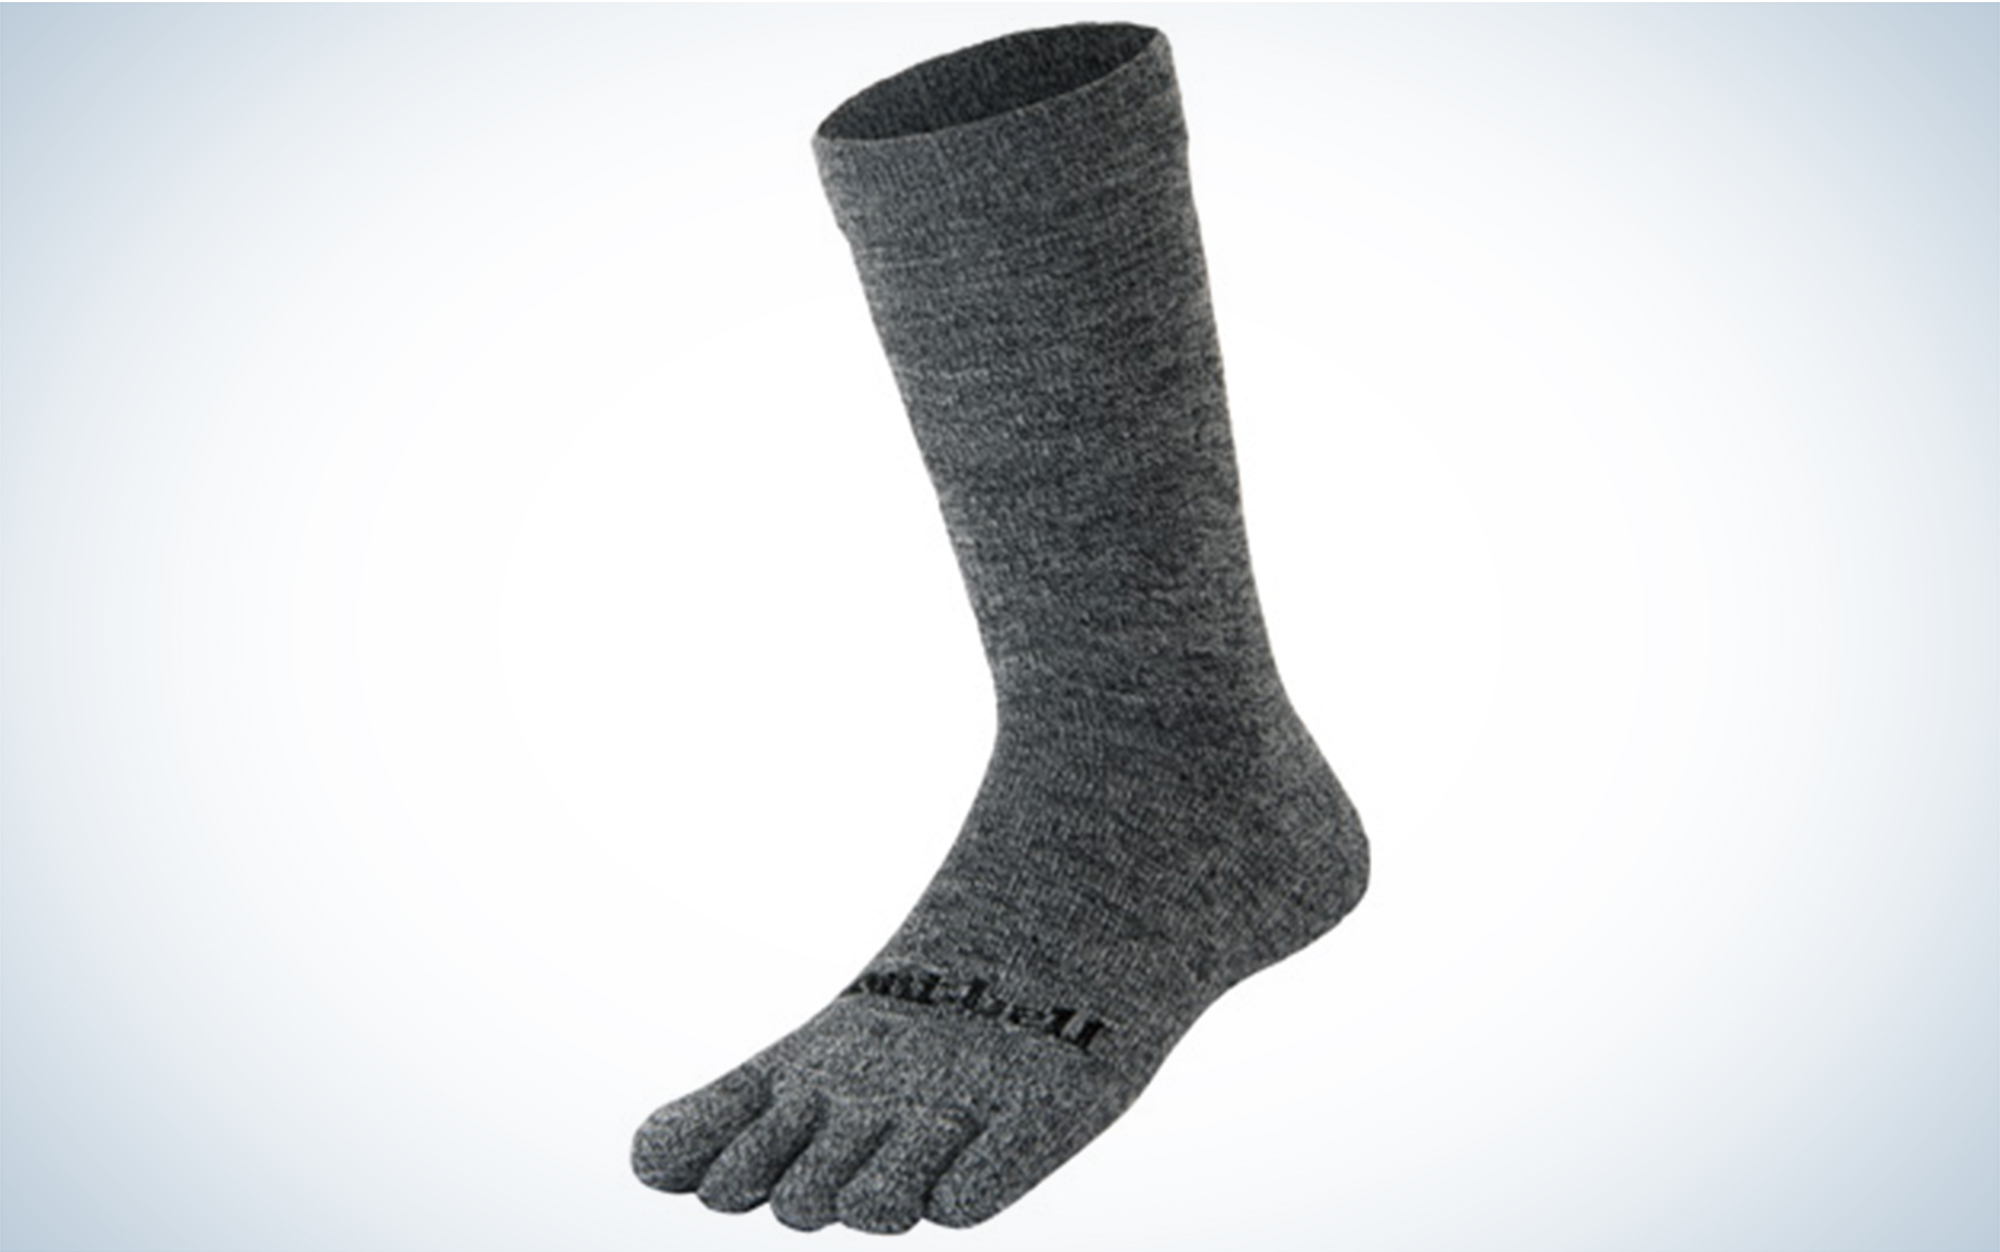 The Montbell Merino Wool Travel 5 Toe Socks are the best toe socks.